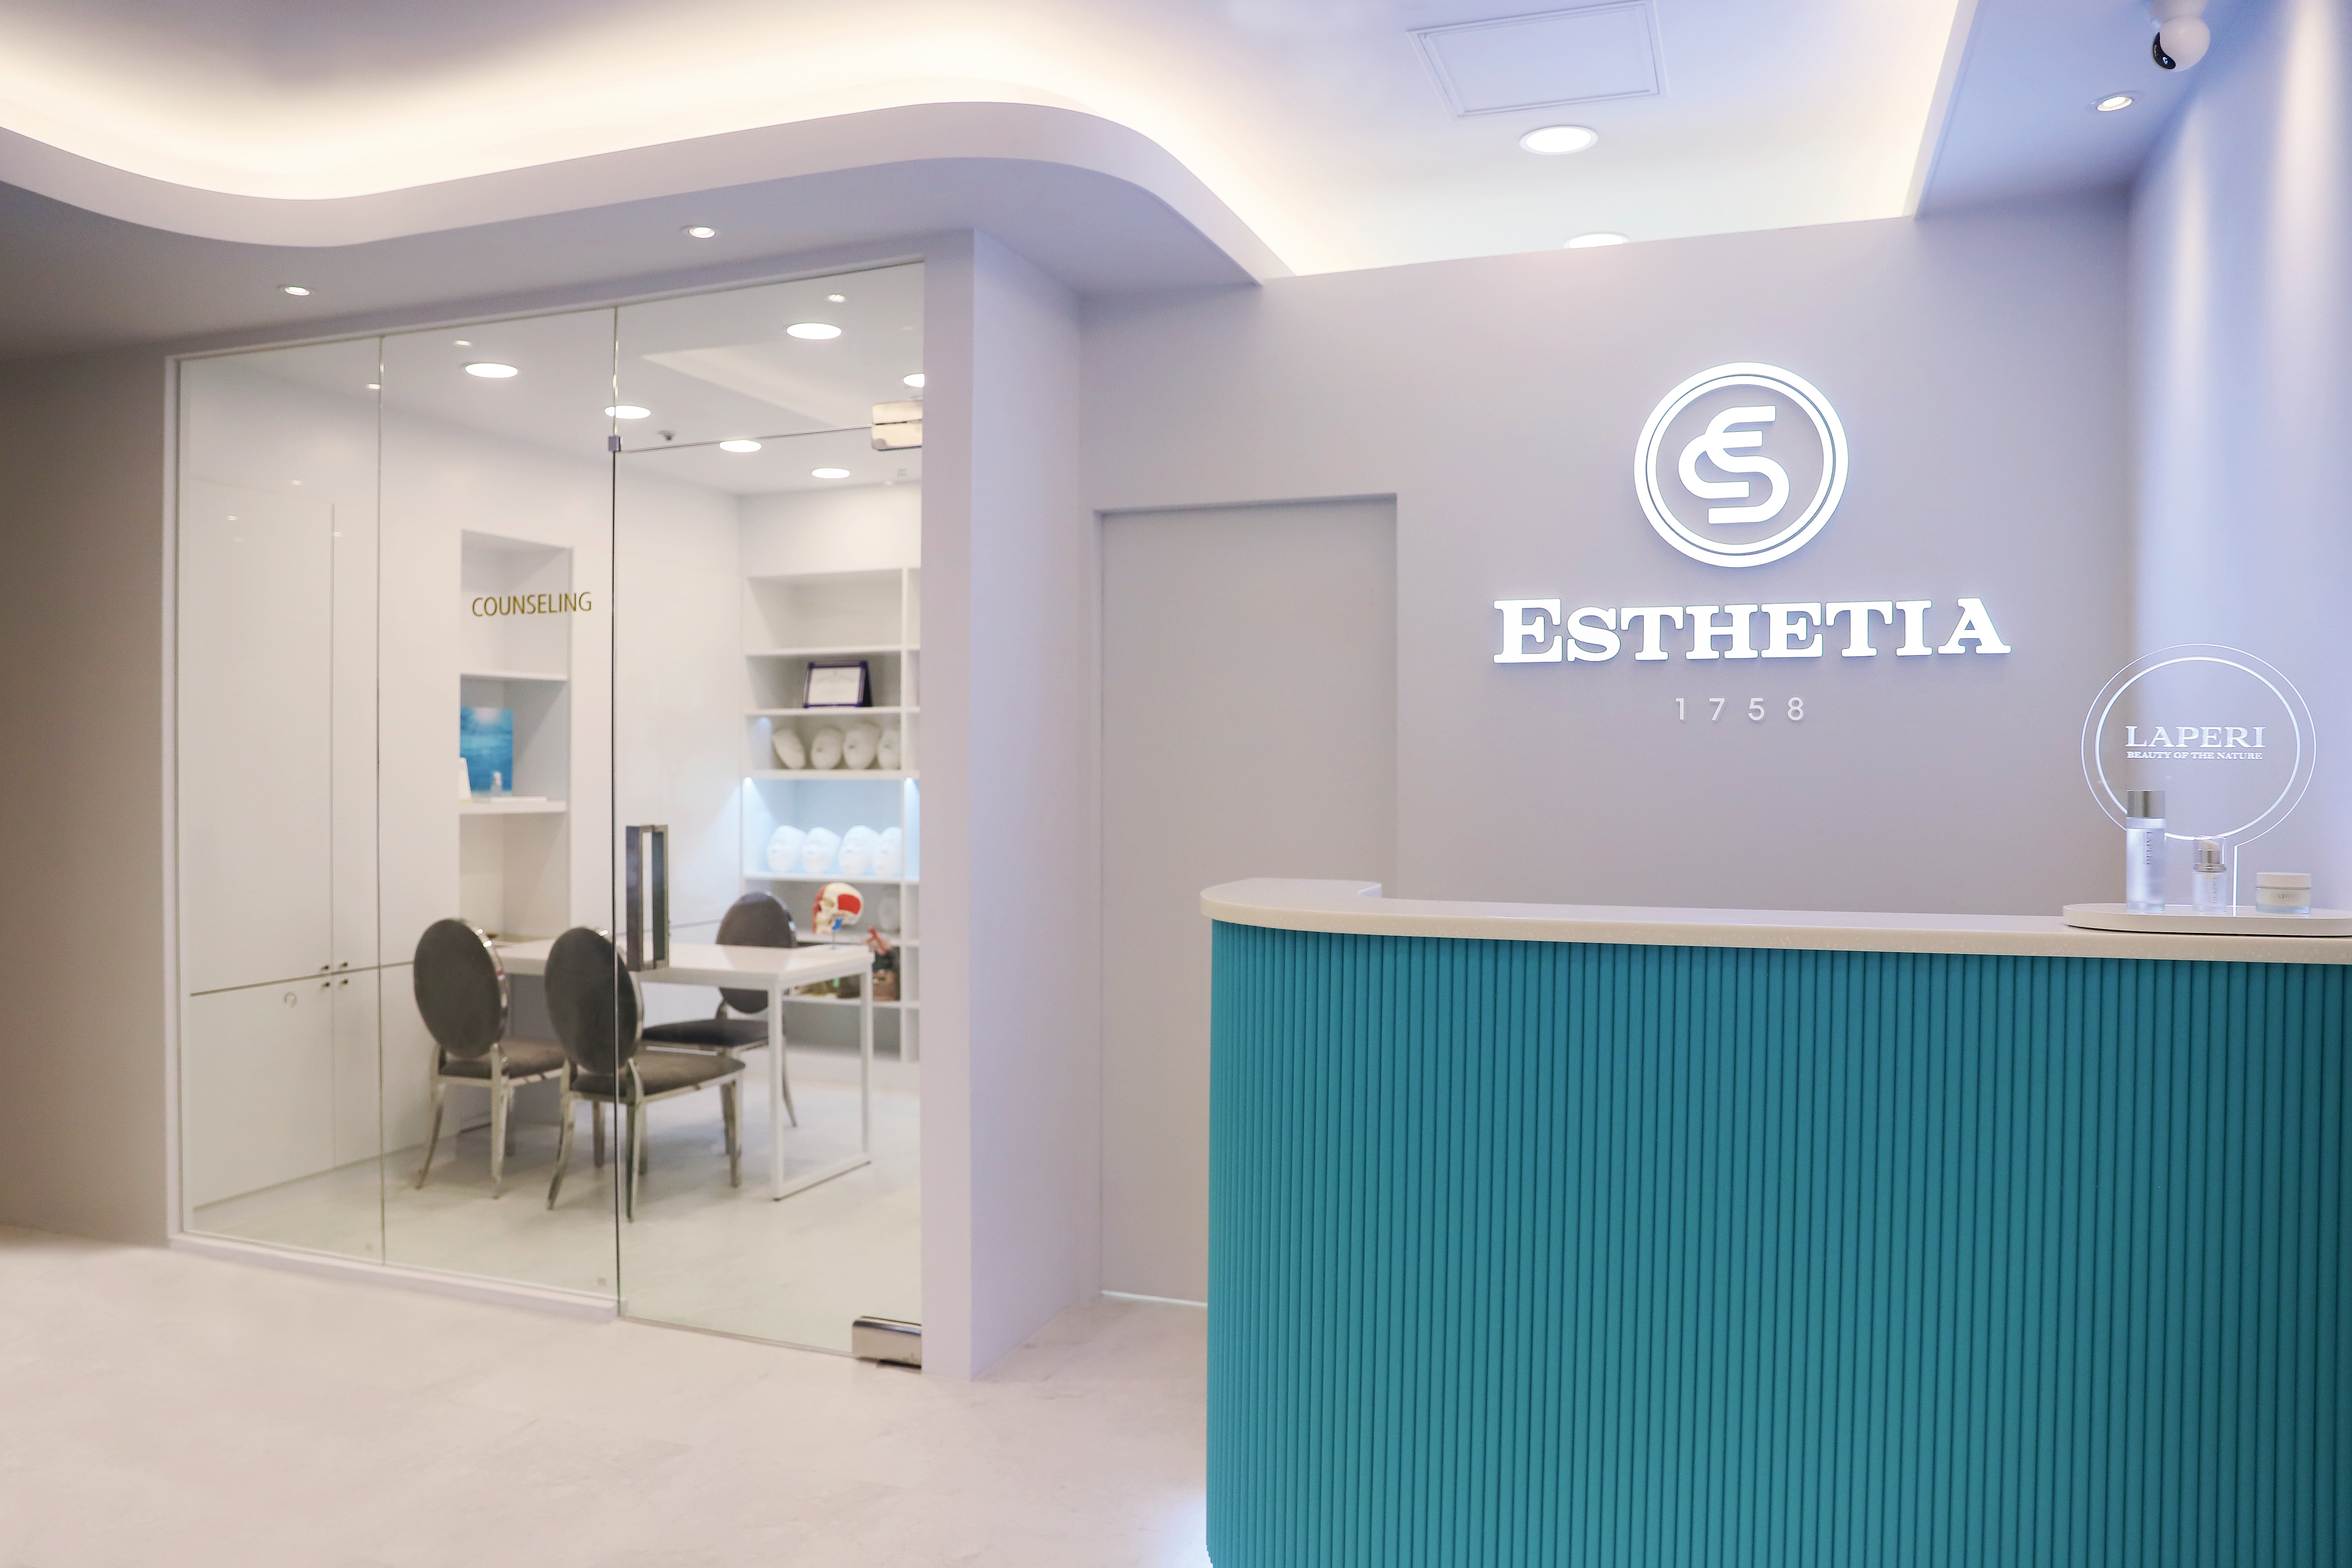 에스테틱 브랜드, 에스테티아 인천구월1호점 그랜드 오픈